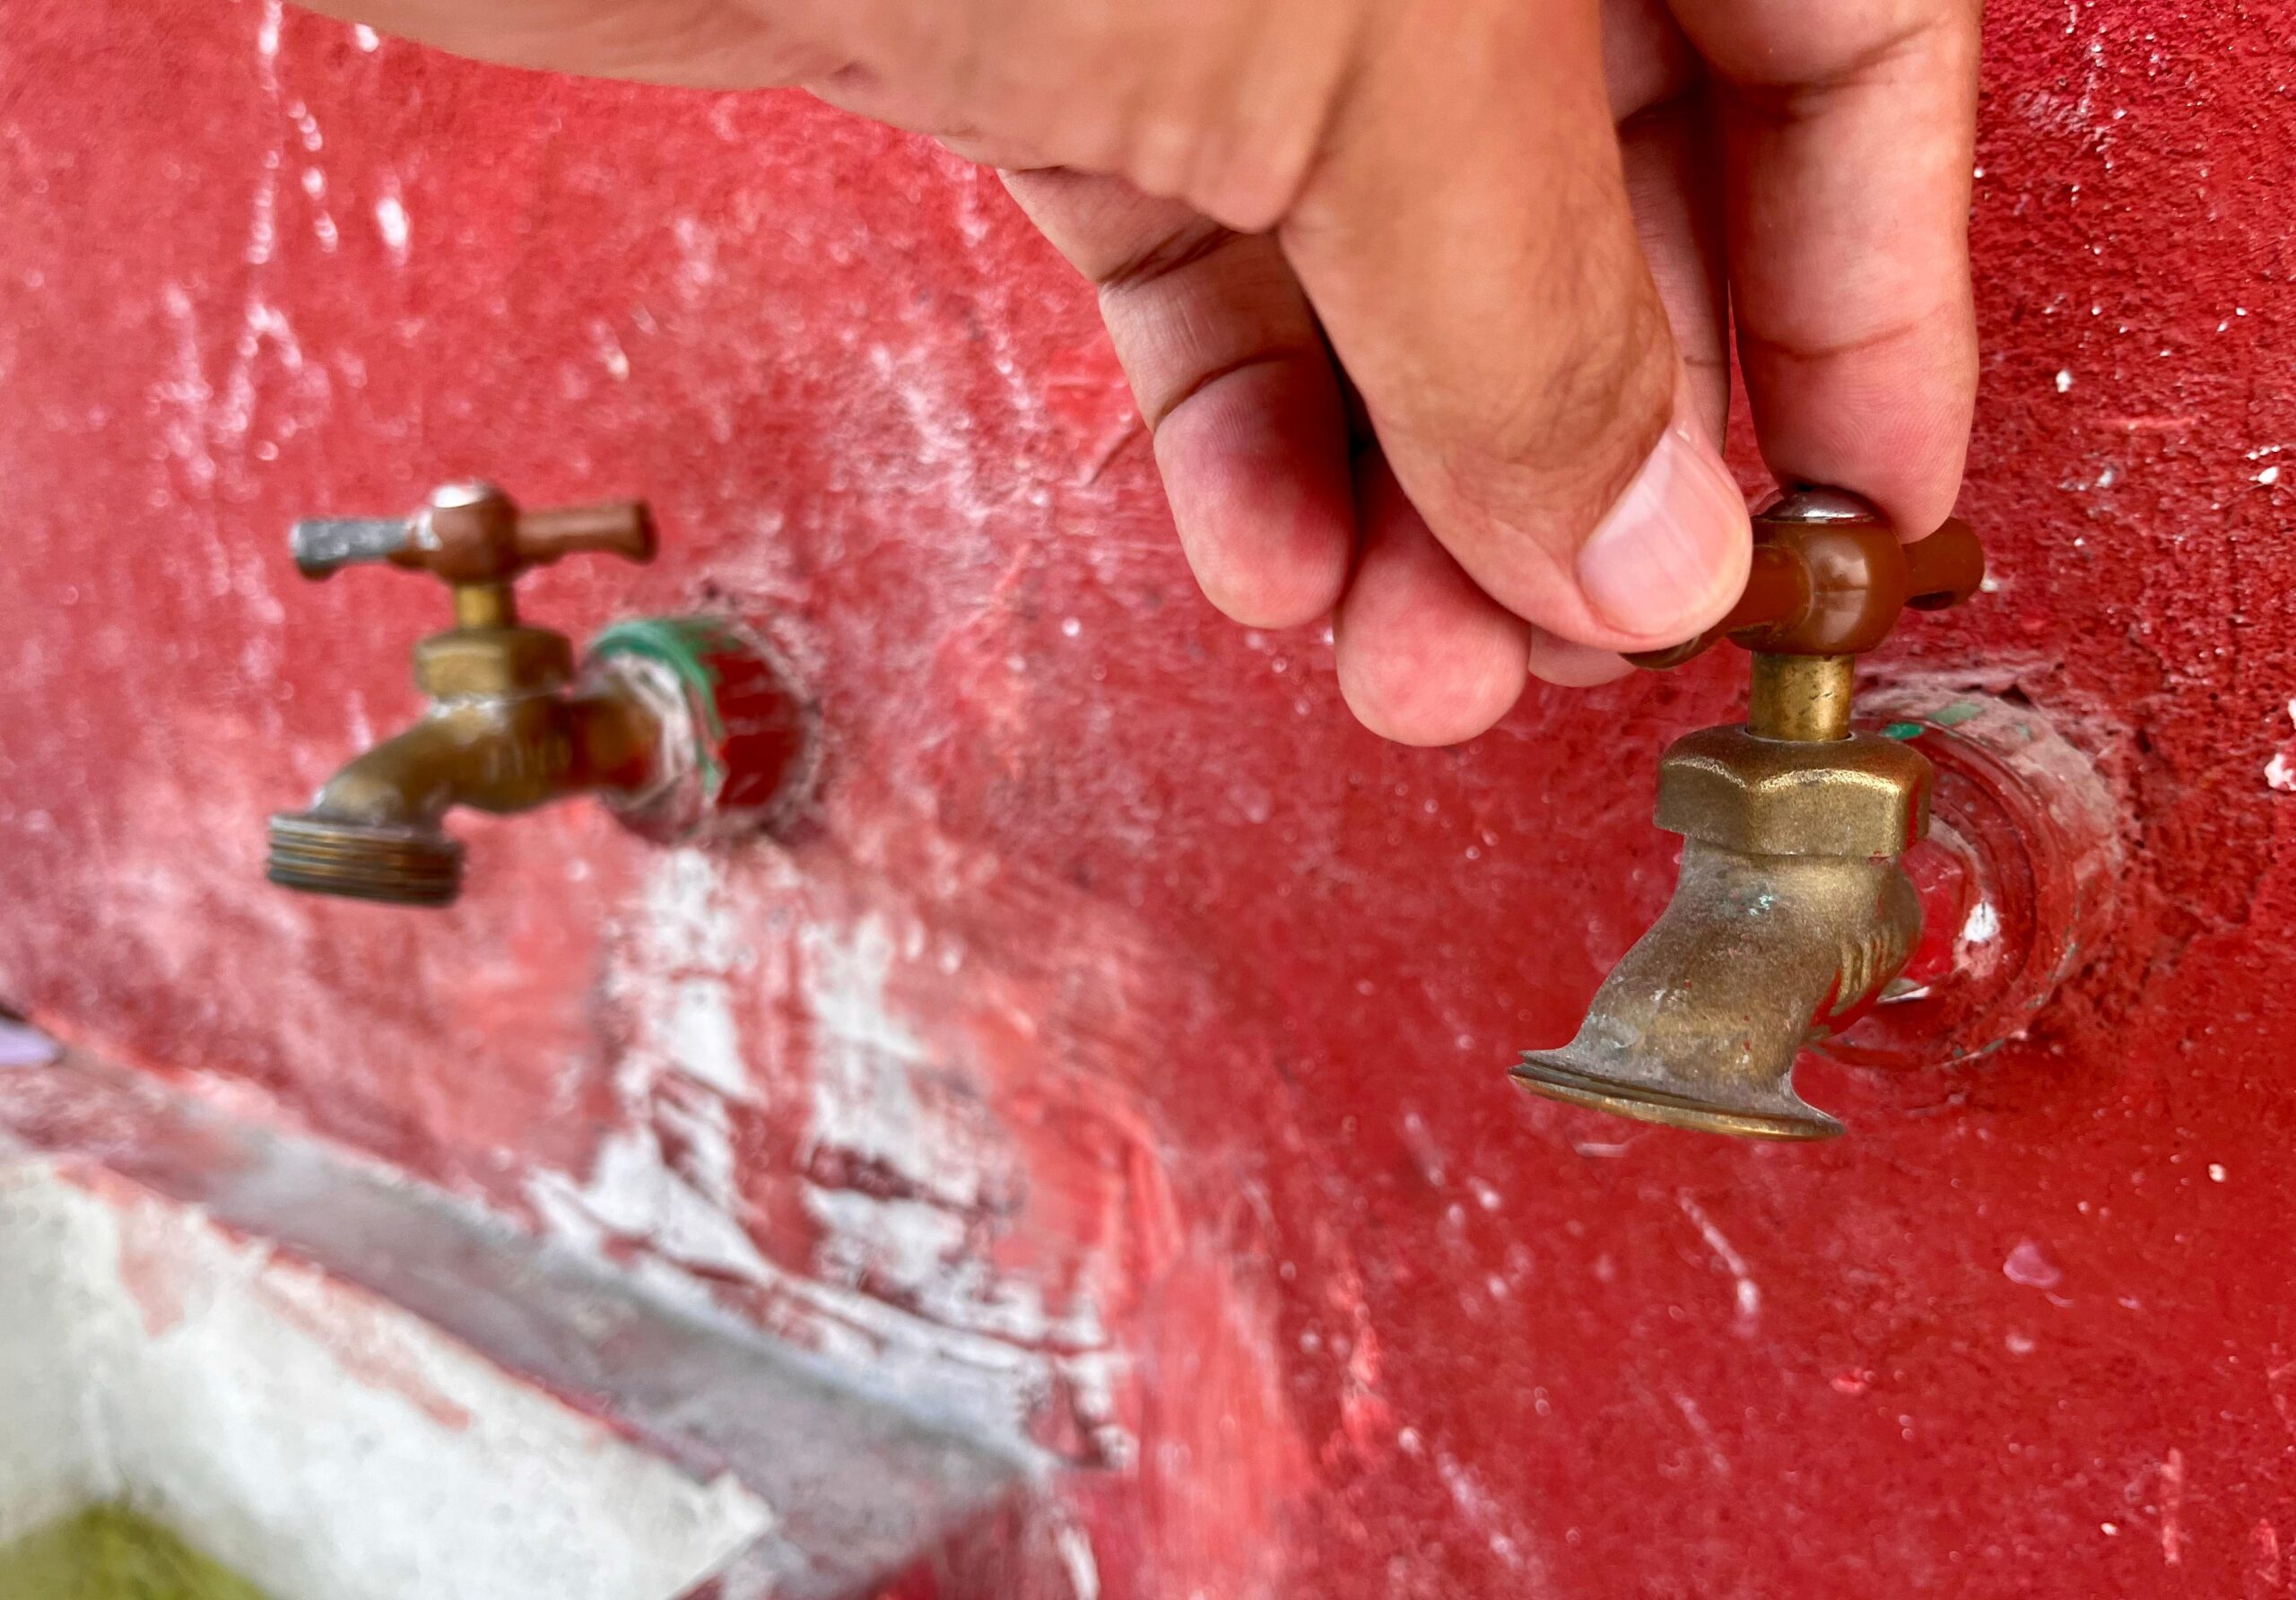 Por conflictos externos, Xalapa sin agua nuevamente